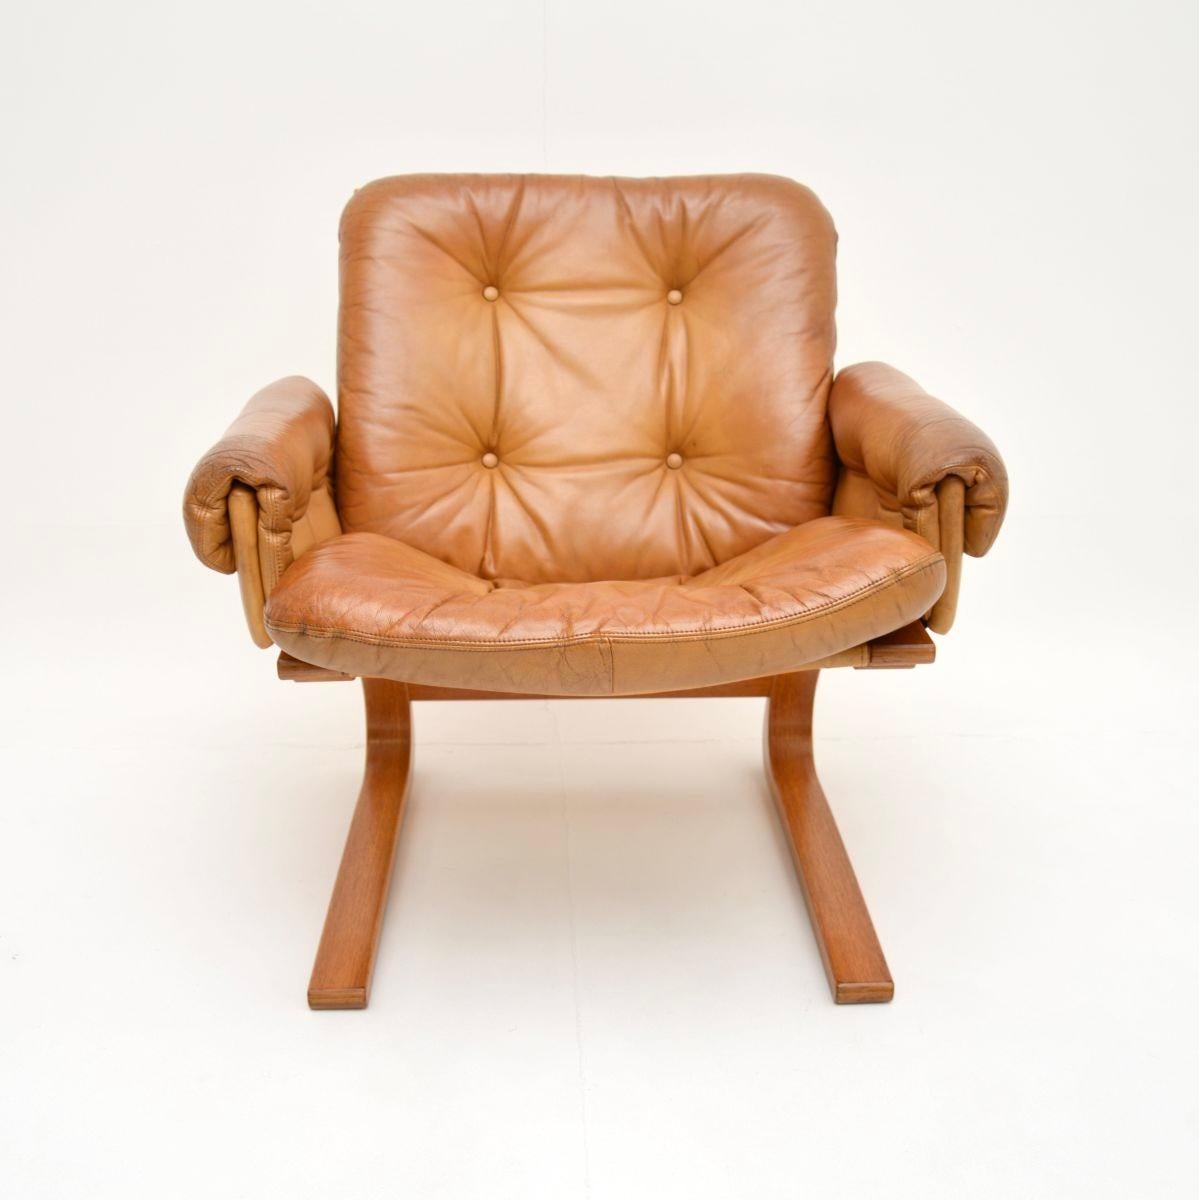 Ein stilvoller und äußerst bequemer Kengu-Sessel aus Leder im Vintage-Stil von Elsa und Nordahl Solheim für Rykken. Es wurde in Norwegen hergestellt und stammt aus den 1970er Jahren.

Die Qualität ist außergewöhnlich, das Design ist wunderschön und